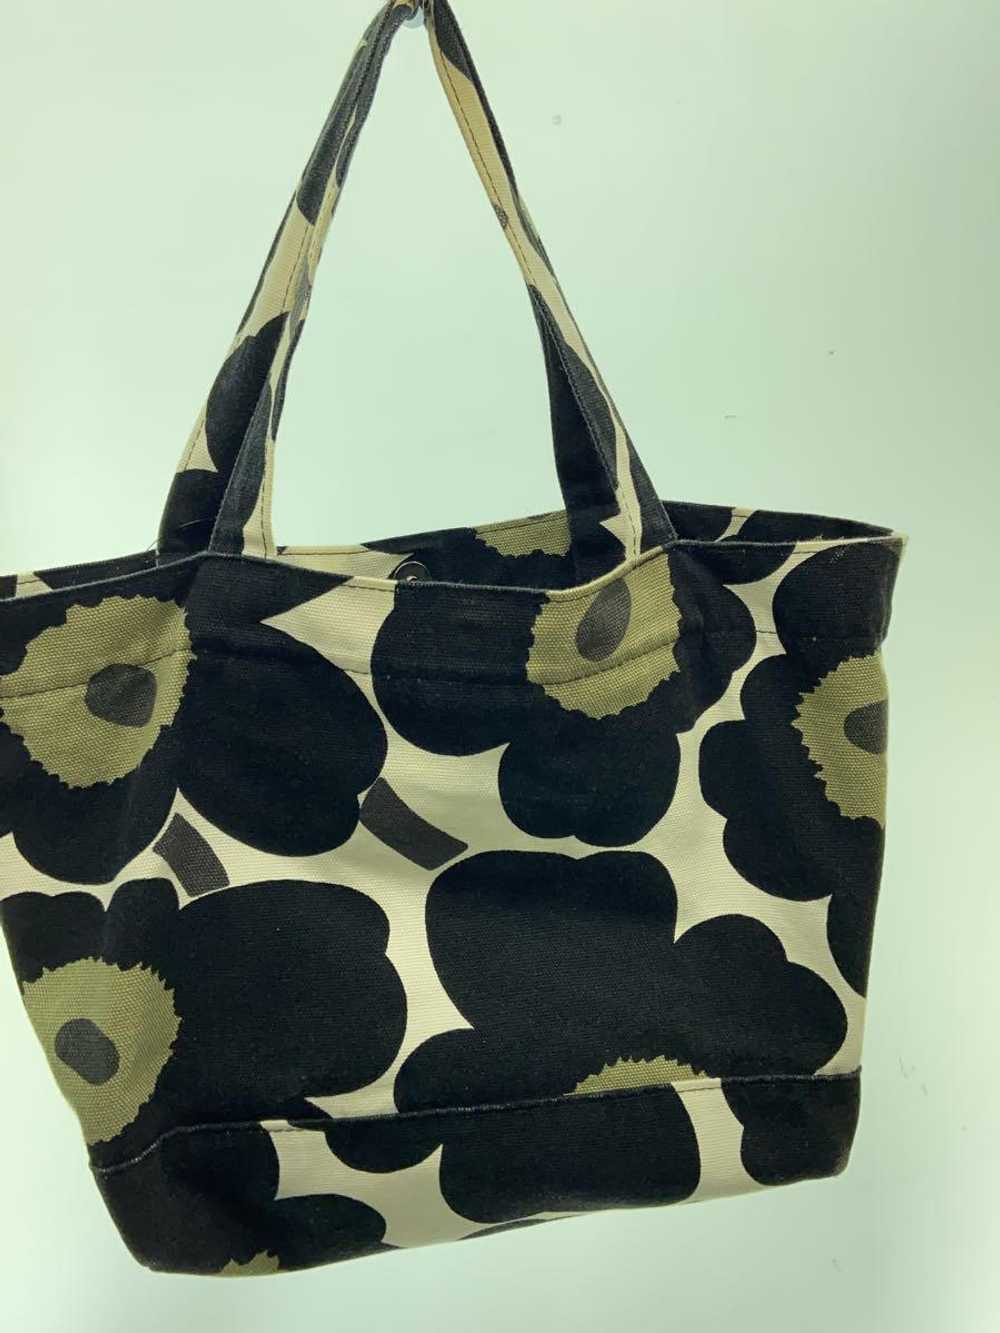 Marimekko Tote Bag/Cotton/Blk/Floral Pattern Bag - image 3